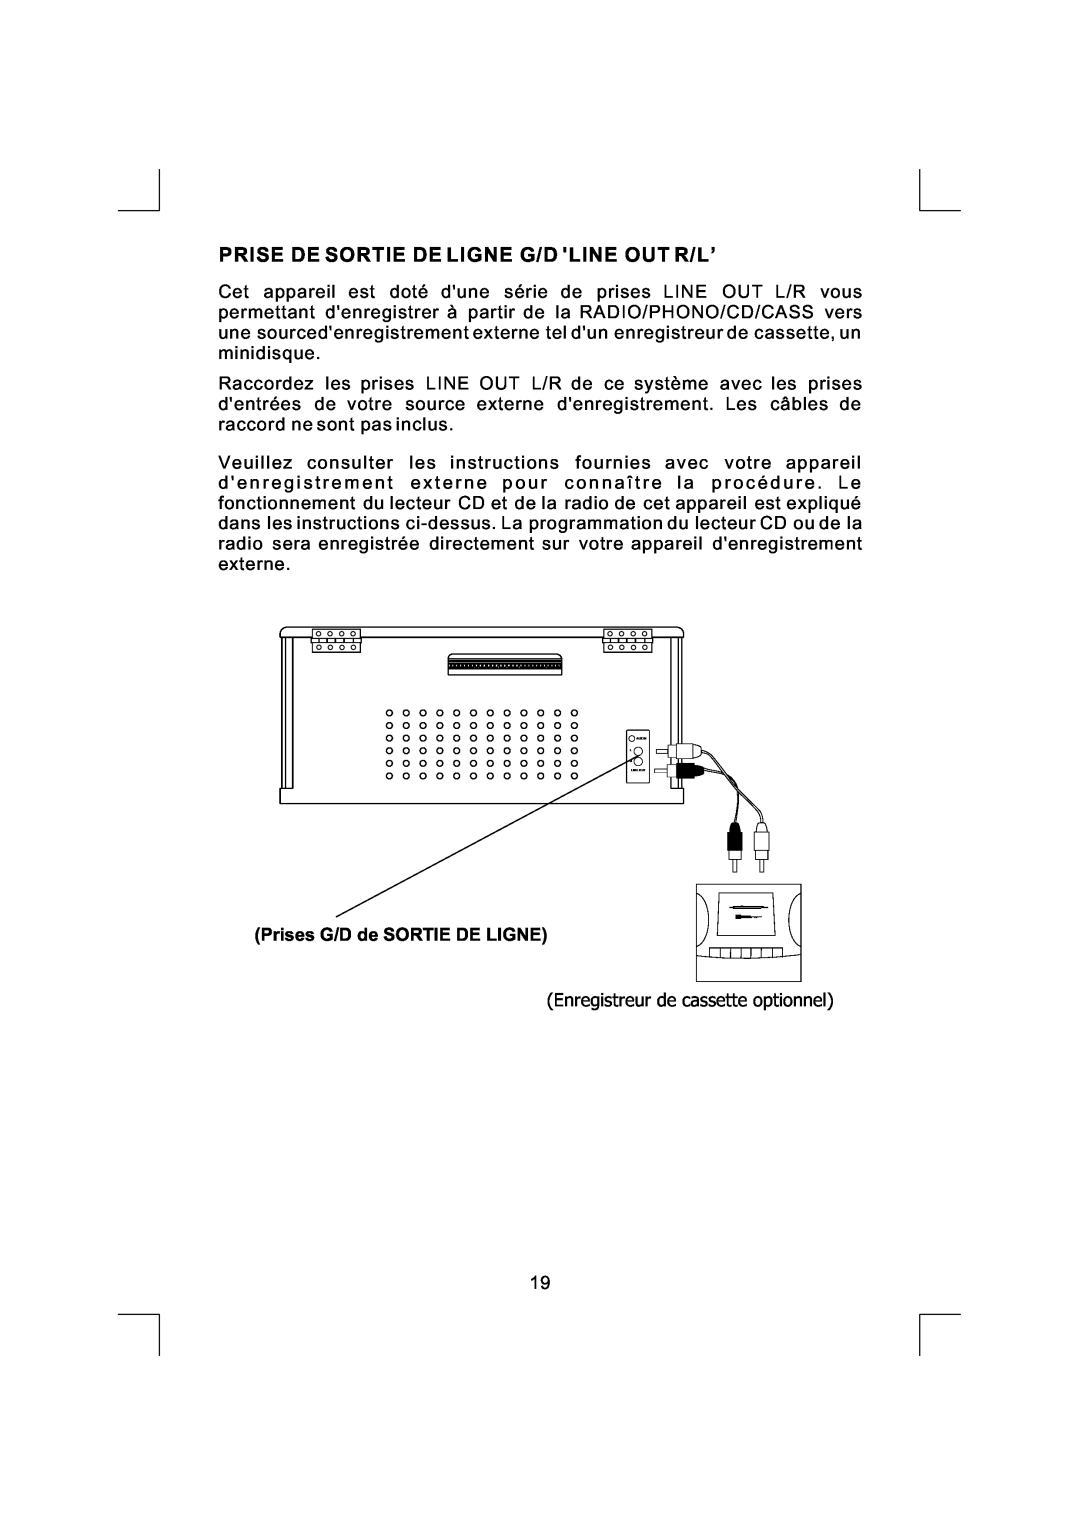 Emerson NR290TTC owner manual Prise De Sortie De Ligne G/D Line Out R/L’, Prises G/D de SORTIE DE LIGNE 